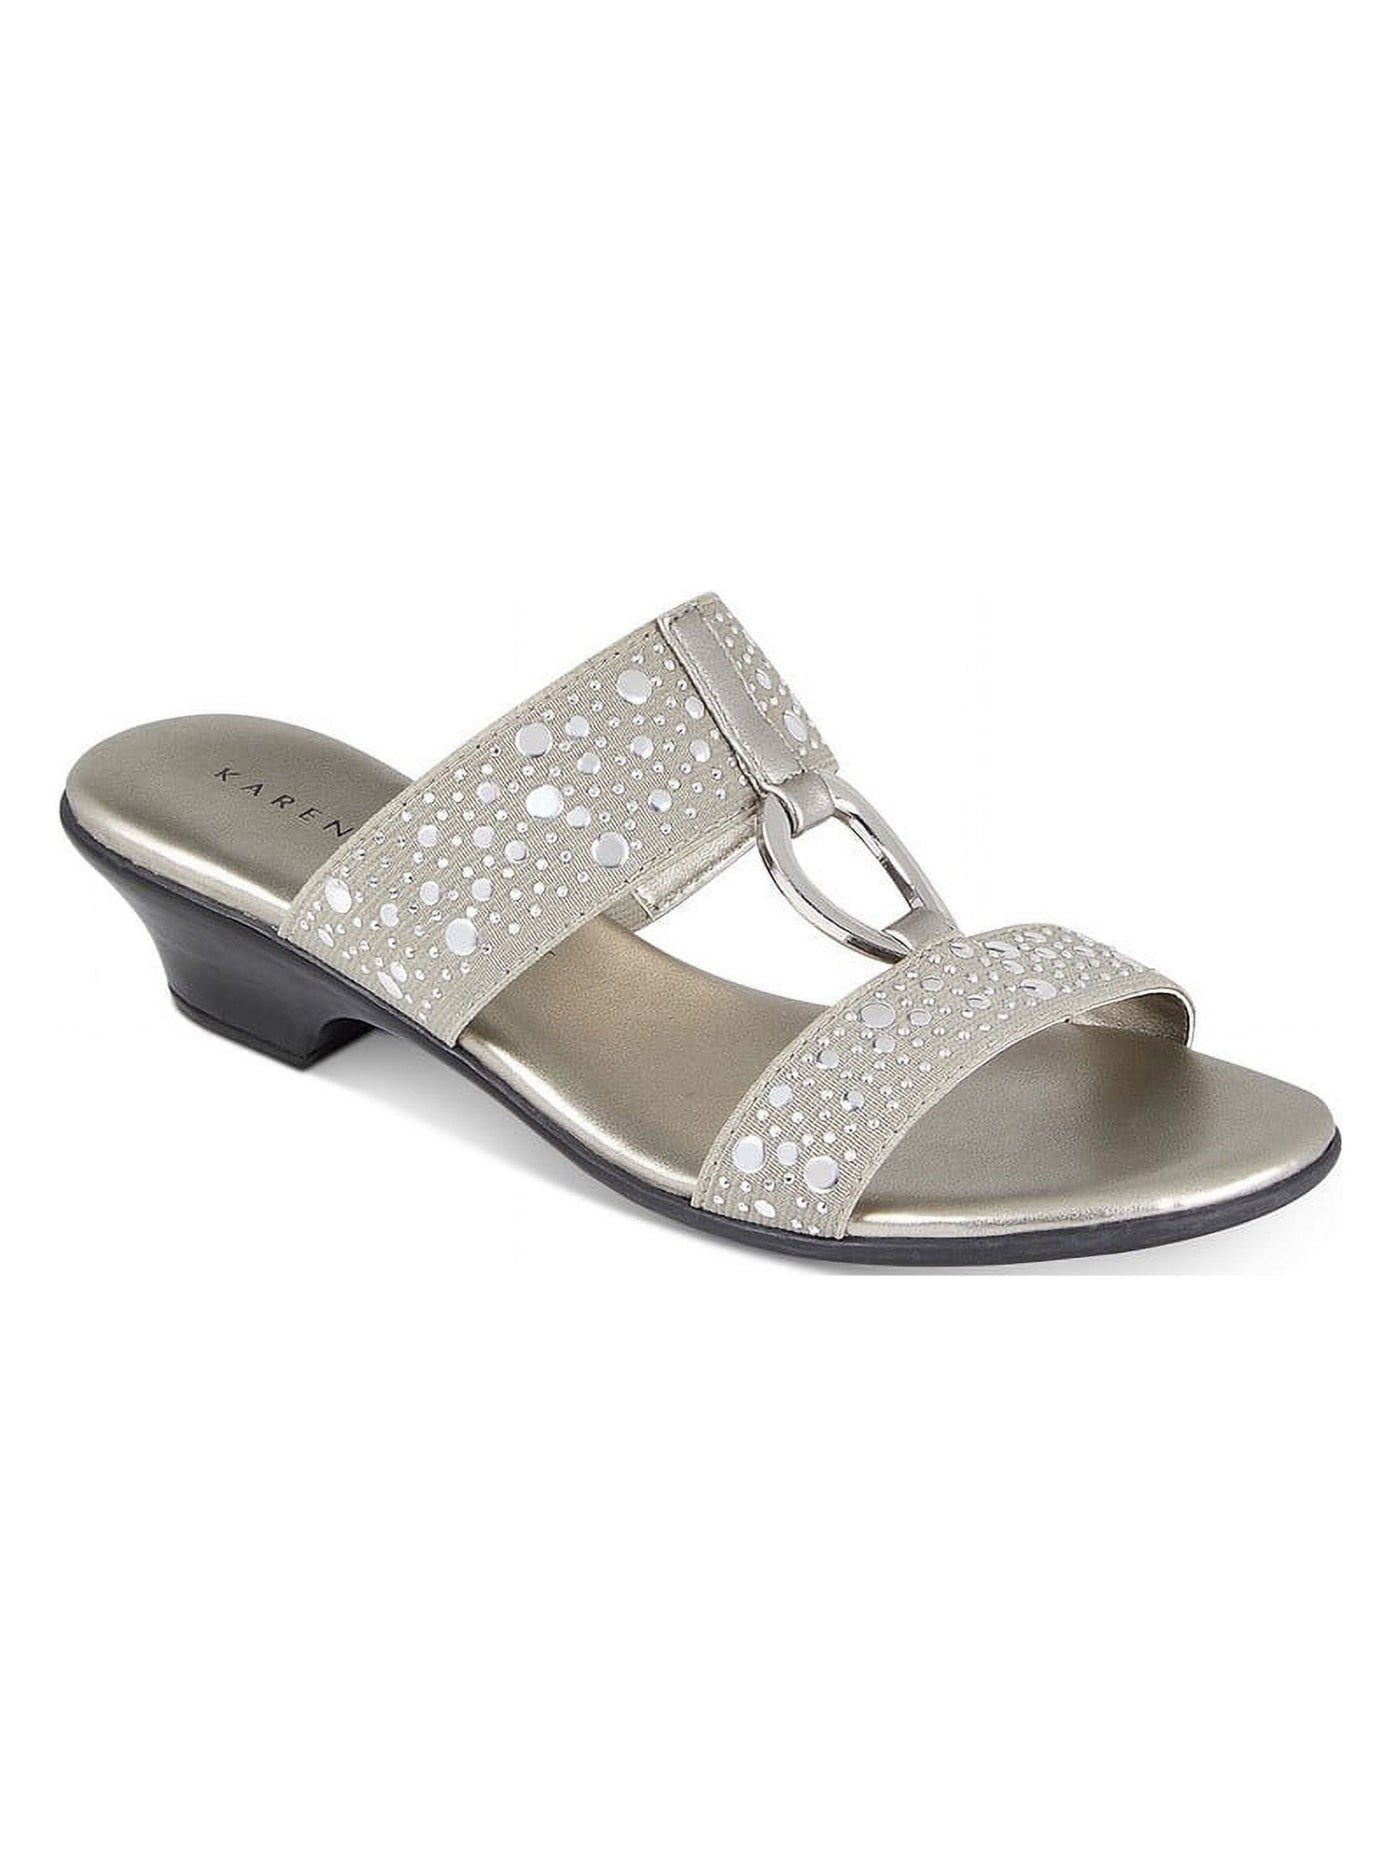 KAREN SCOTT Womens Silver Goring Studded Padded Eanna Round Toe Block Heel Slip On Dress Sandals Shoes 6.5 W